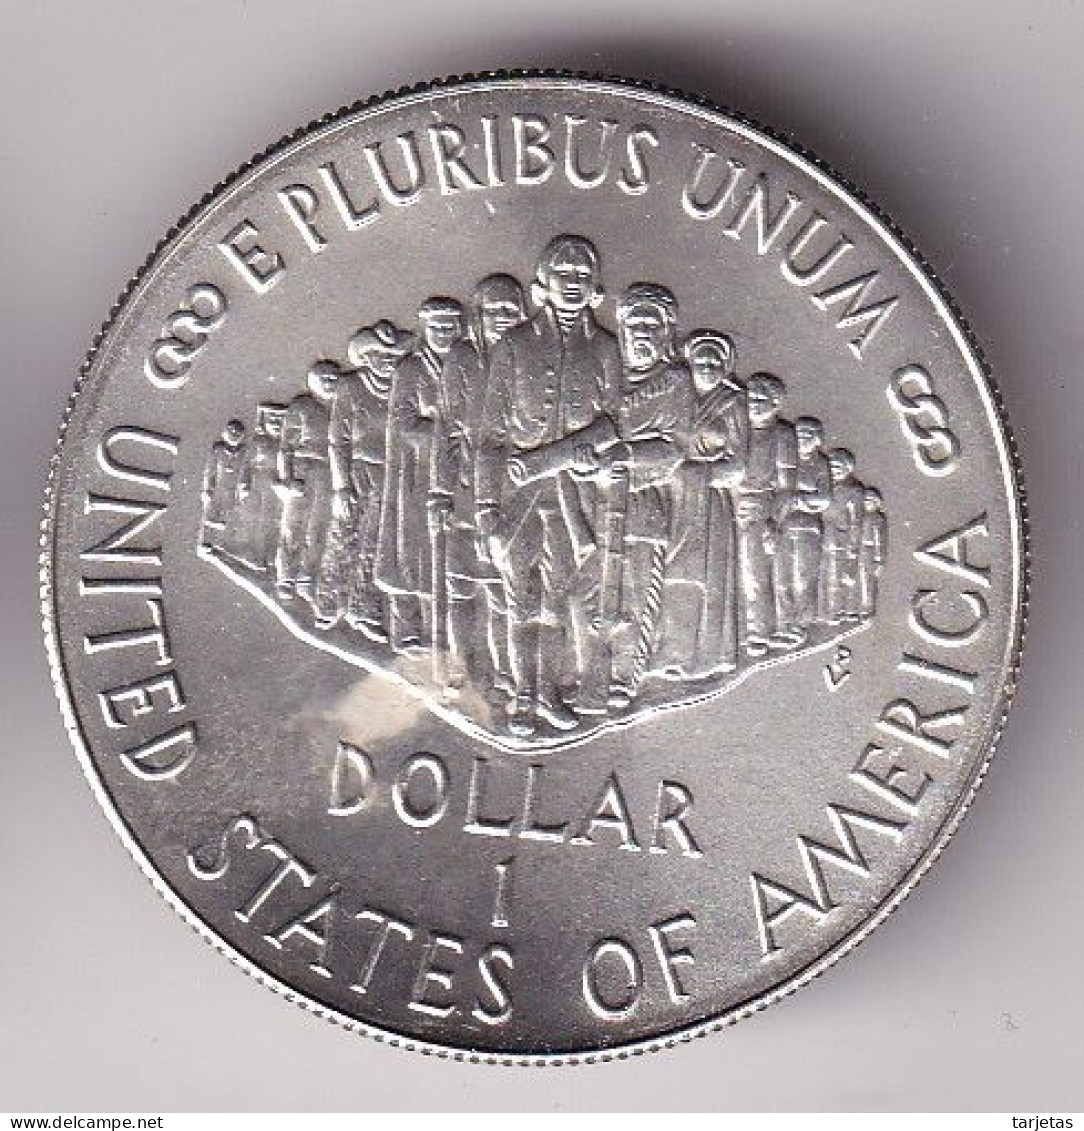 MONEDA DE PLATA DE ESTADOS UNIDOS DE 1 DOLLAR DEL AÑO 1987 (SILVER-ARGENT) - Conmemorativas